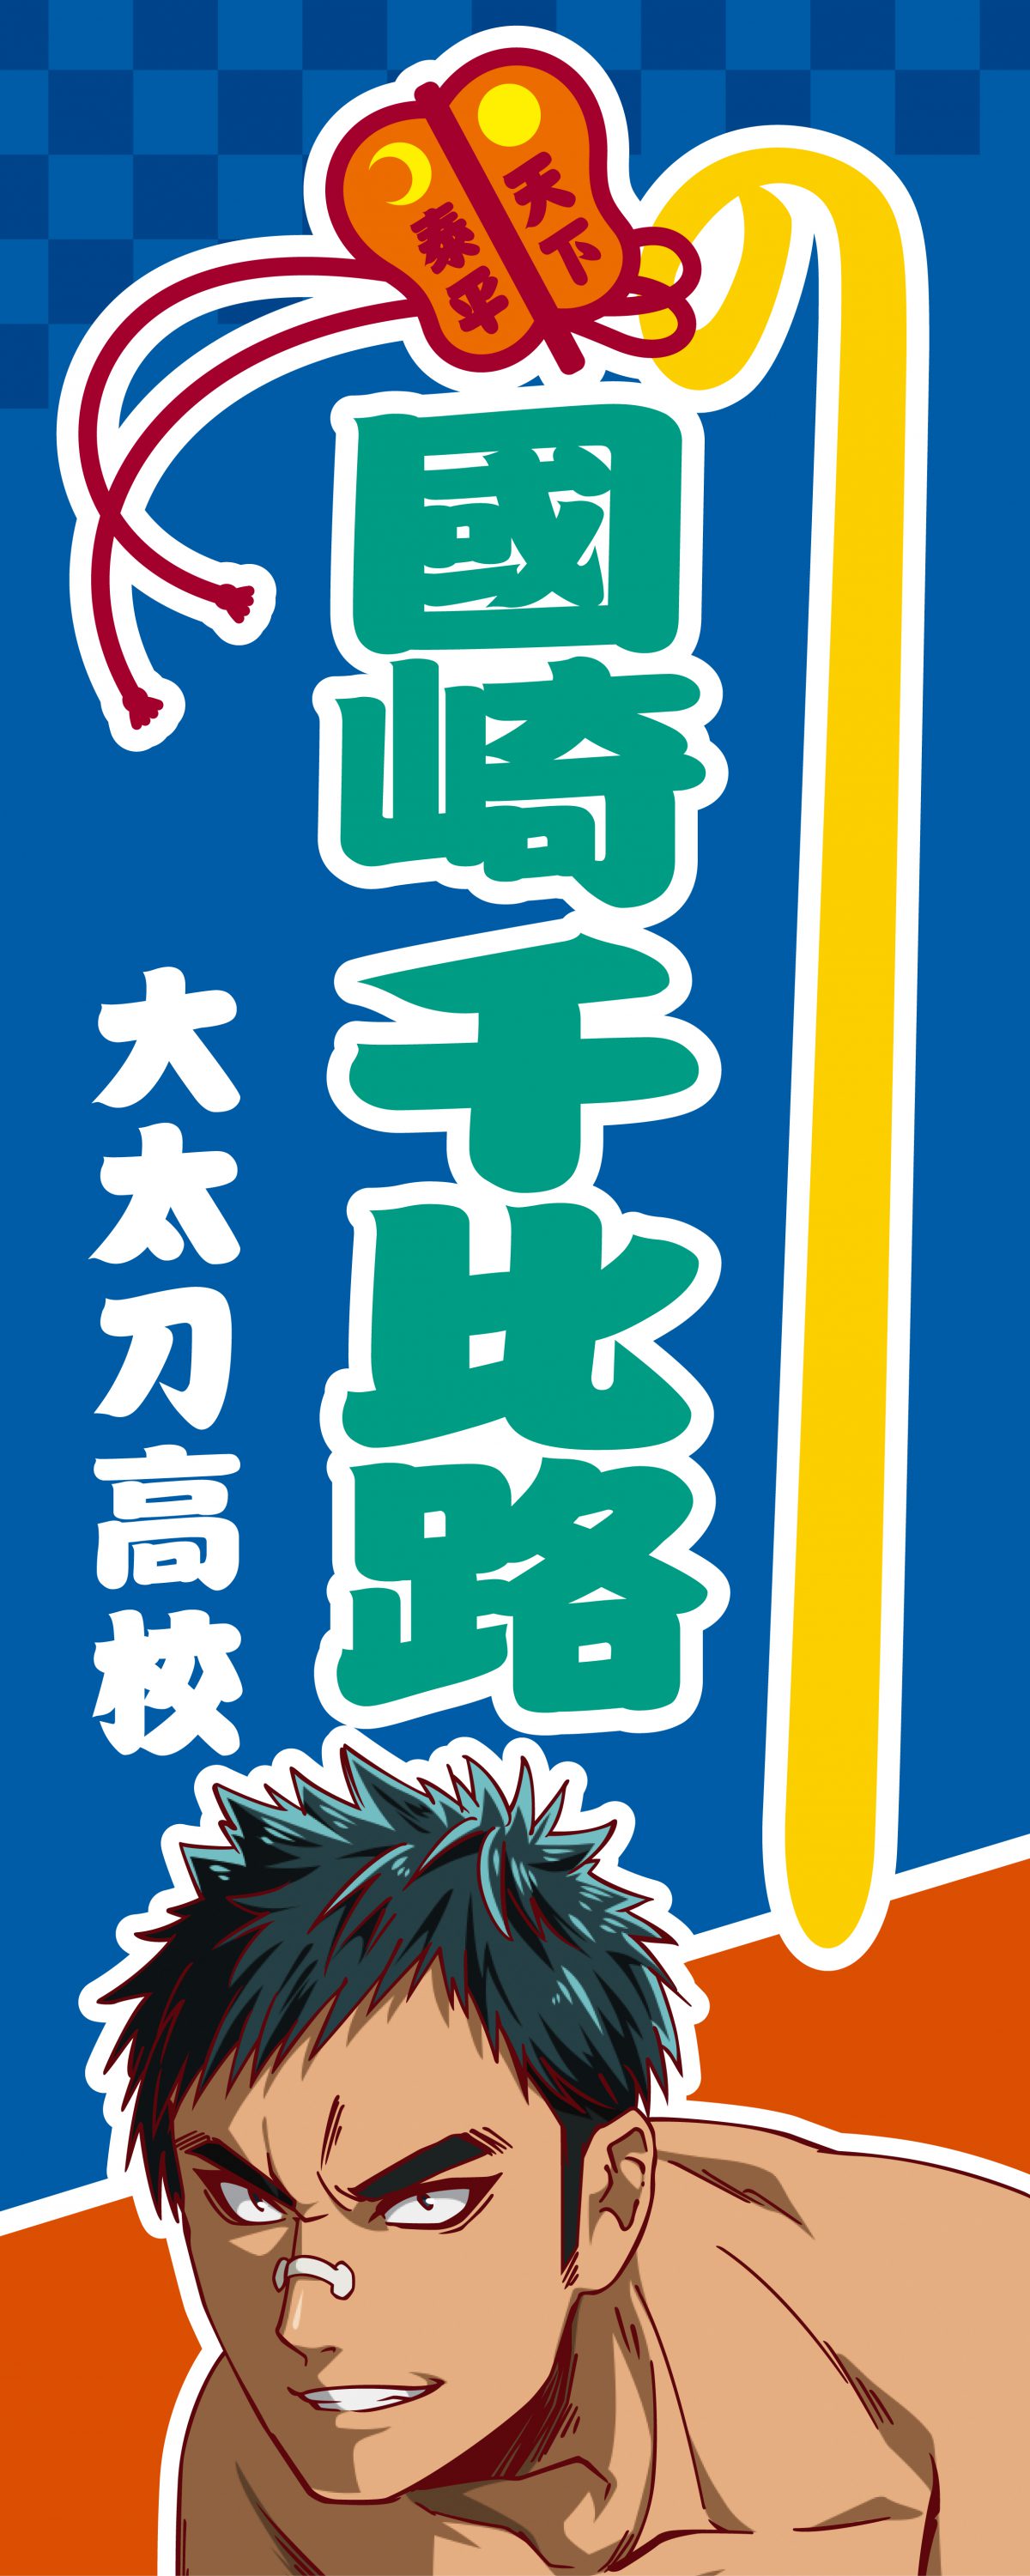 のぼり風手ぬぐい アニメ 火ノ丸相撲 公式サイト